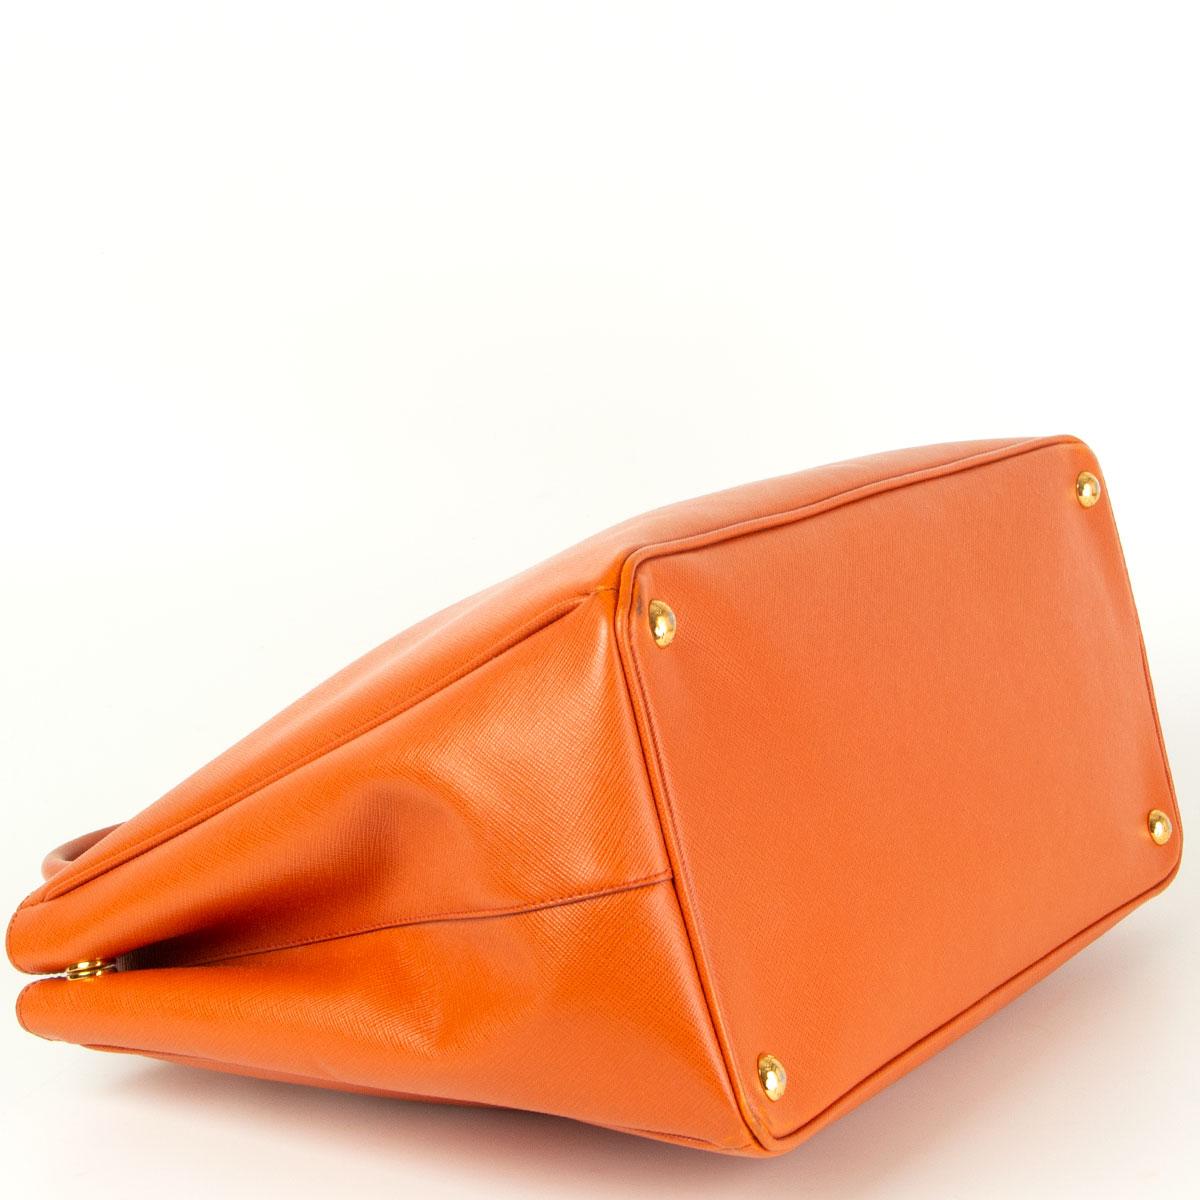 Orange PRADA orange leather GALLERIA SAFFIANO LUX TOTE Bag